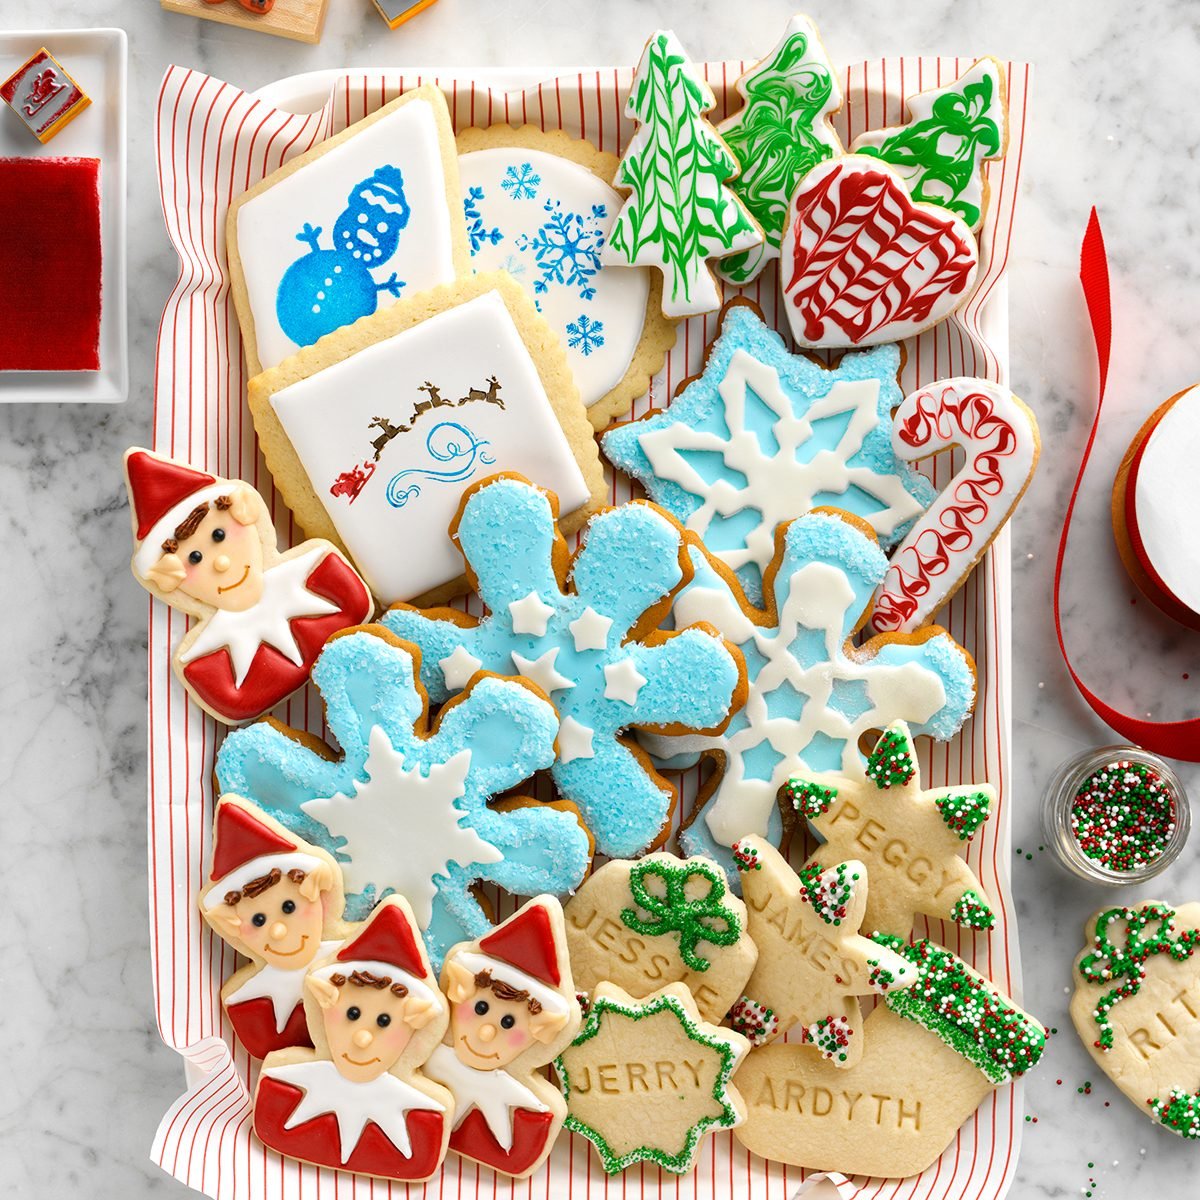 Cookie Decorating Supplies, Food Coloring Gels, Sprinkles, Sanding Sugar,  Royal Icing Mix